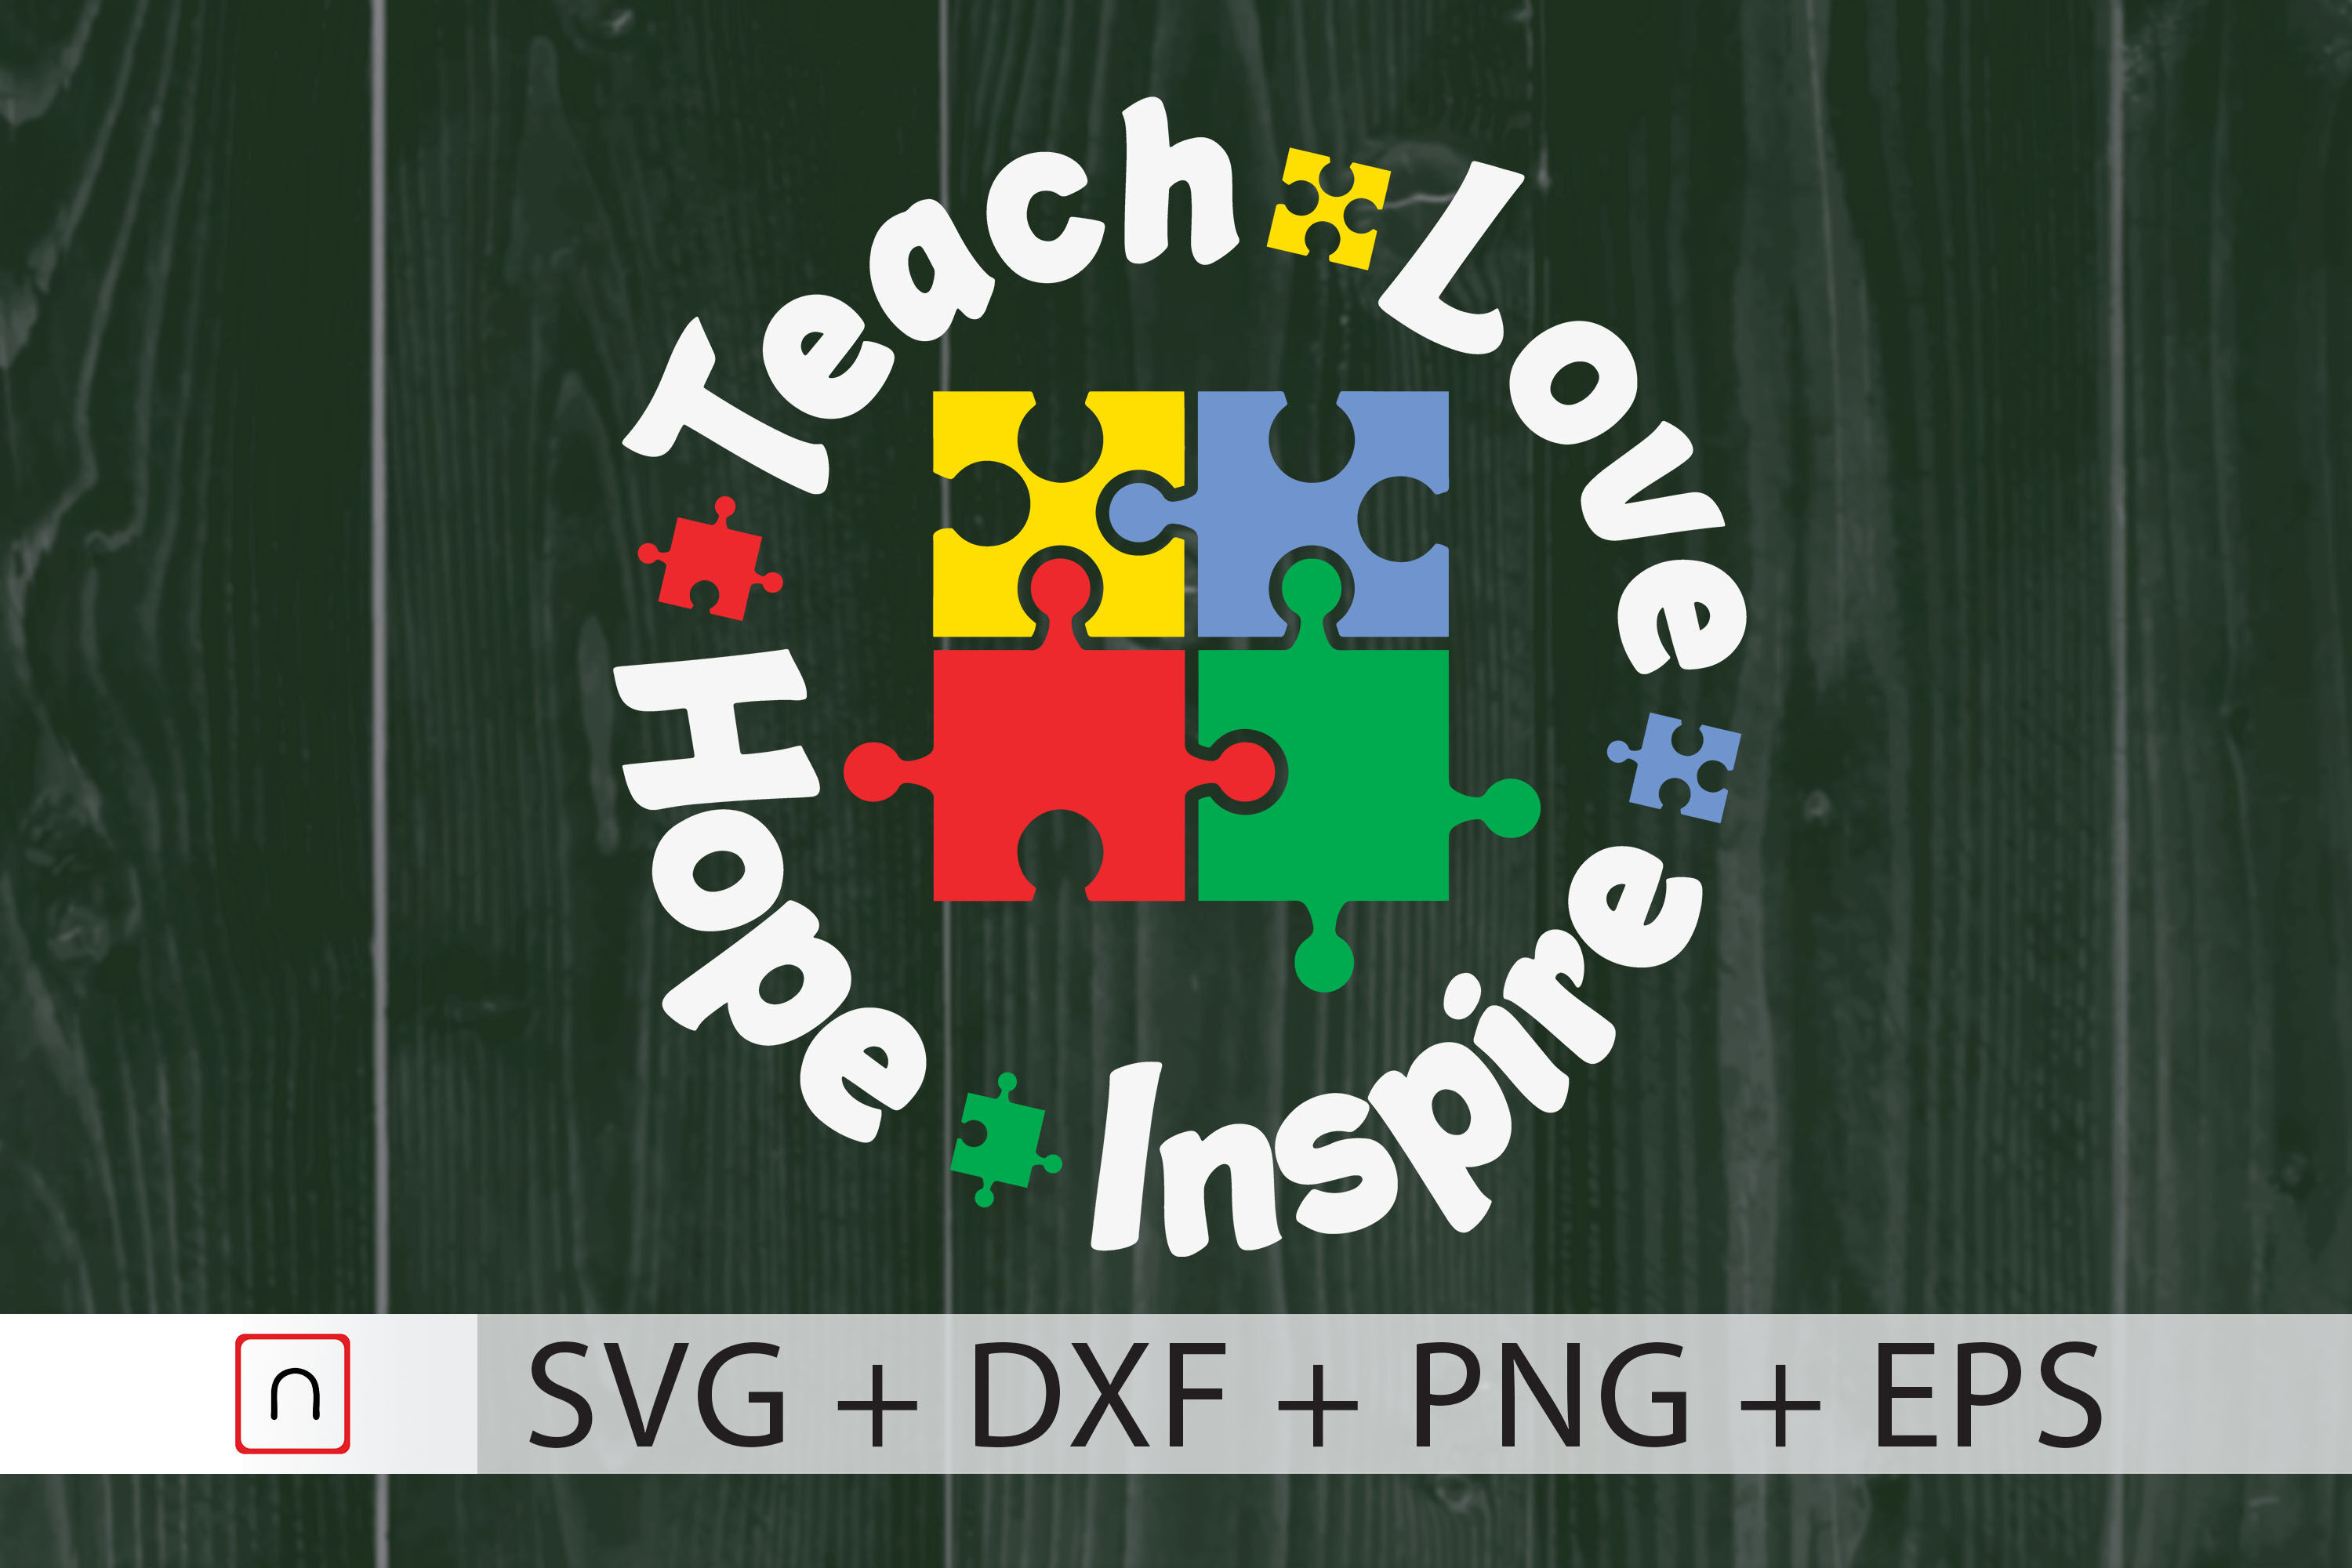 Download Teach Love Hope Inspire Svg Teacher Svg By Novalia Thehungryjpeg Com